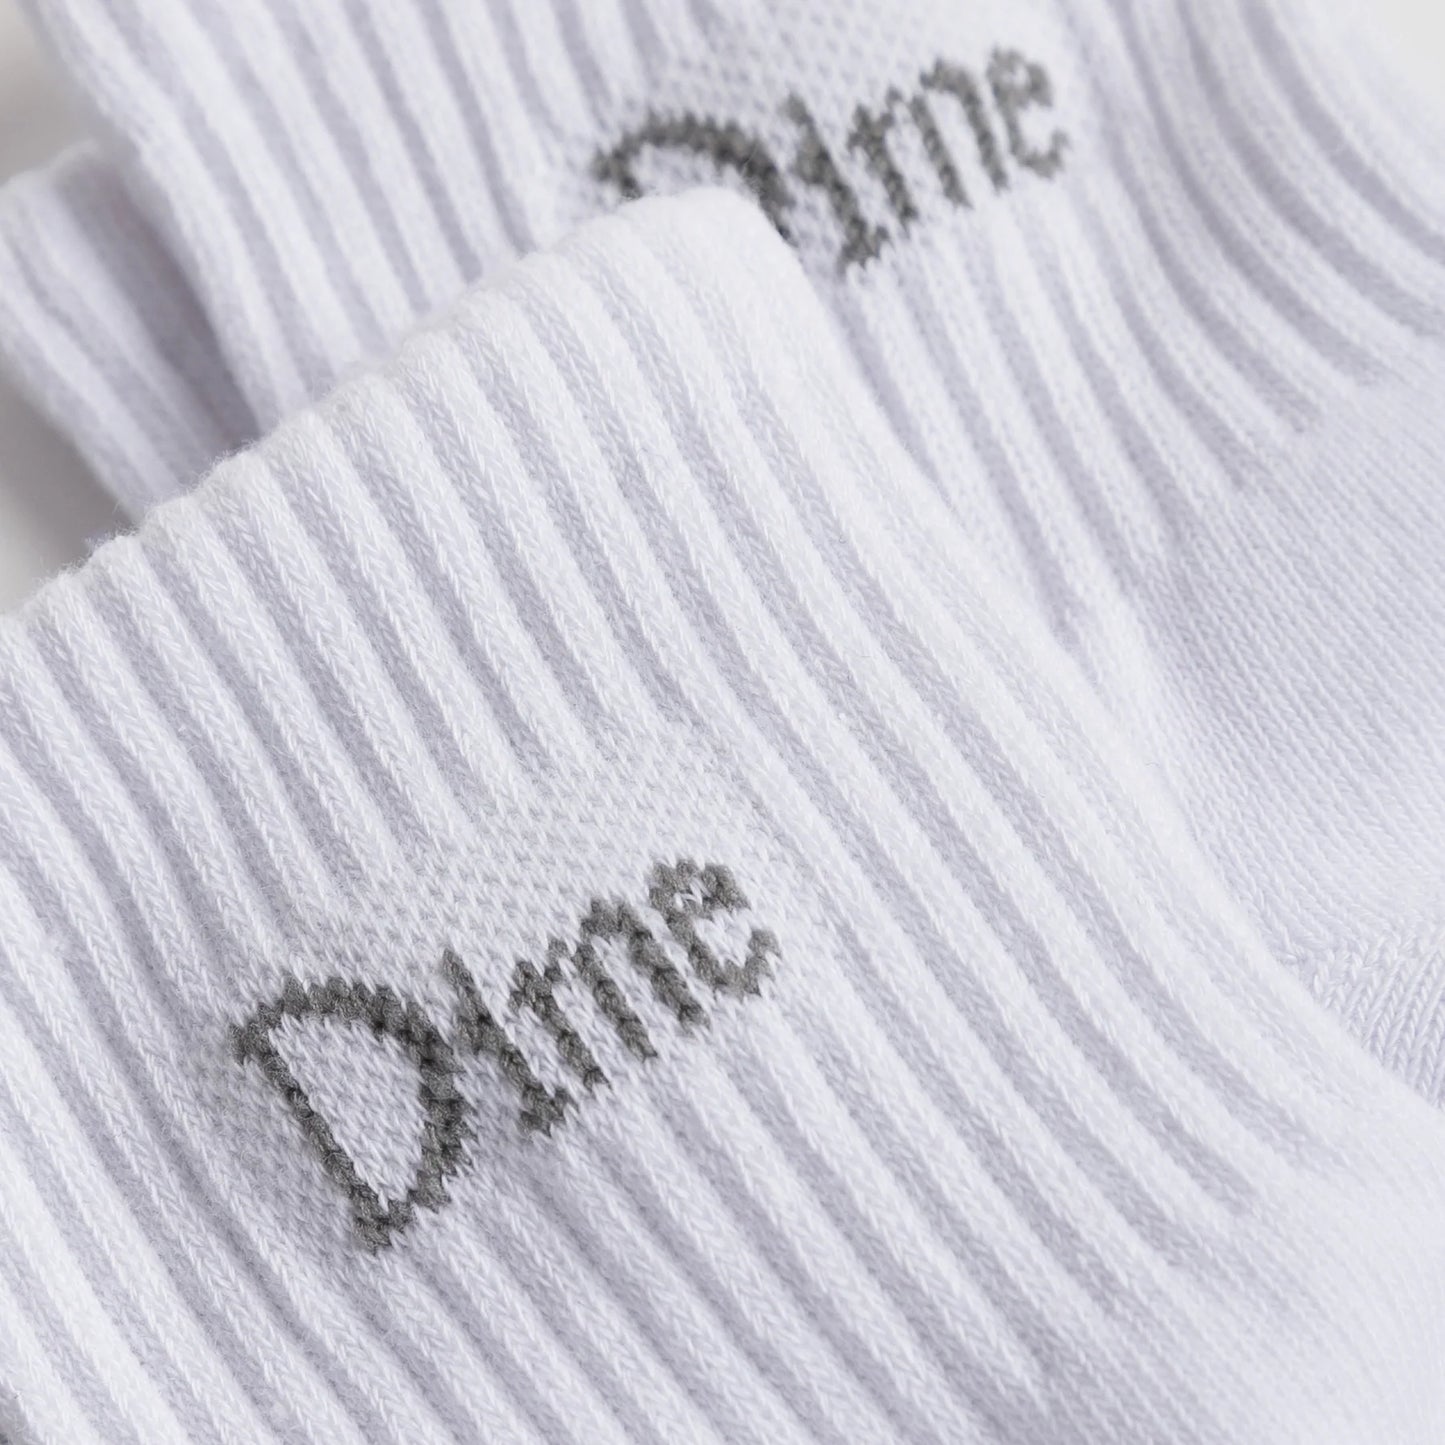 Dime Classic Socks White 2 Pack